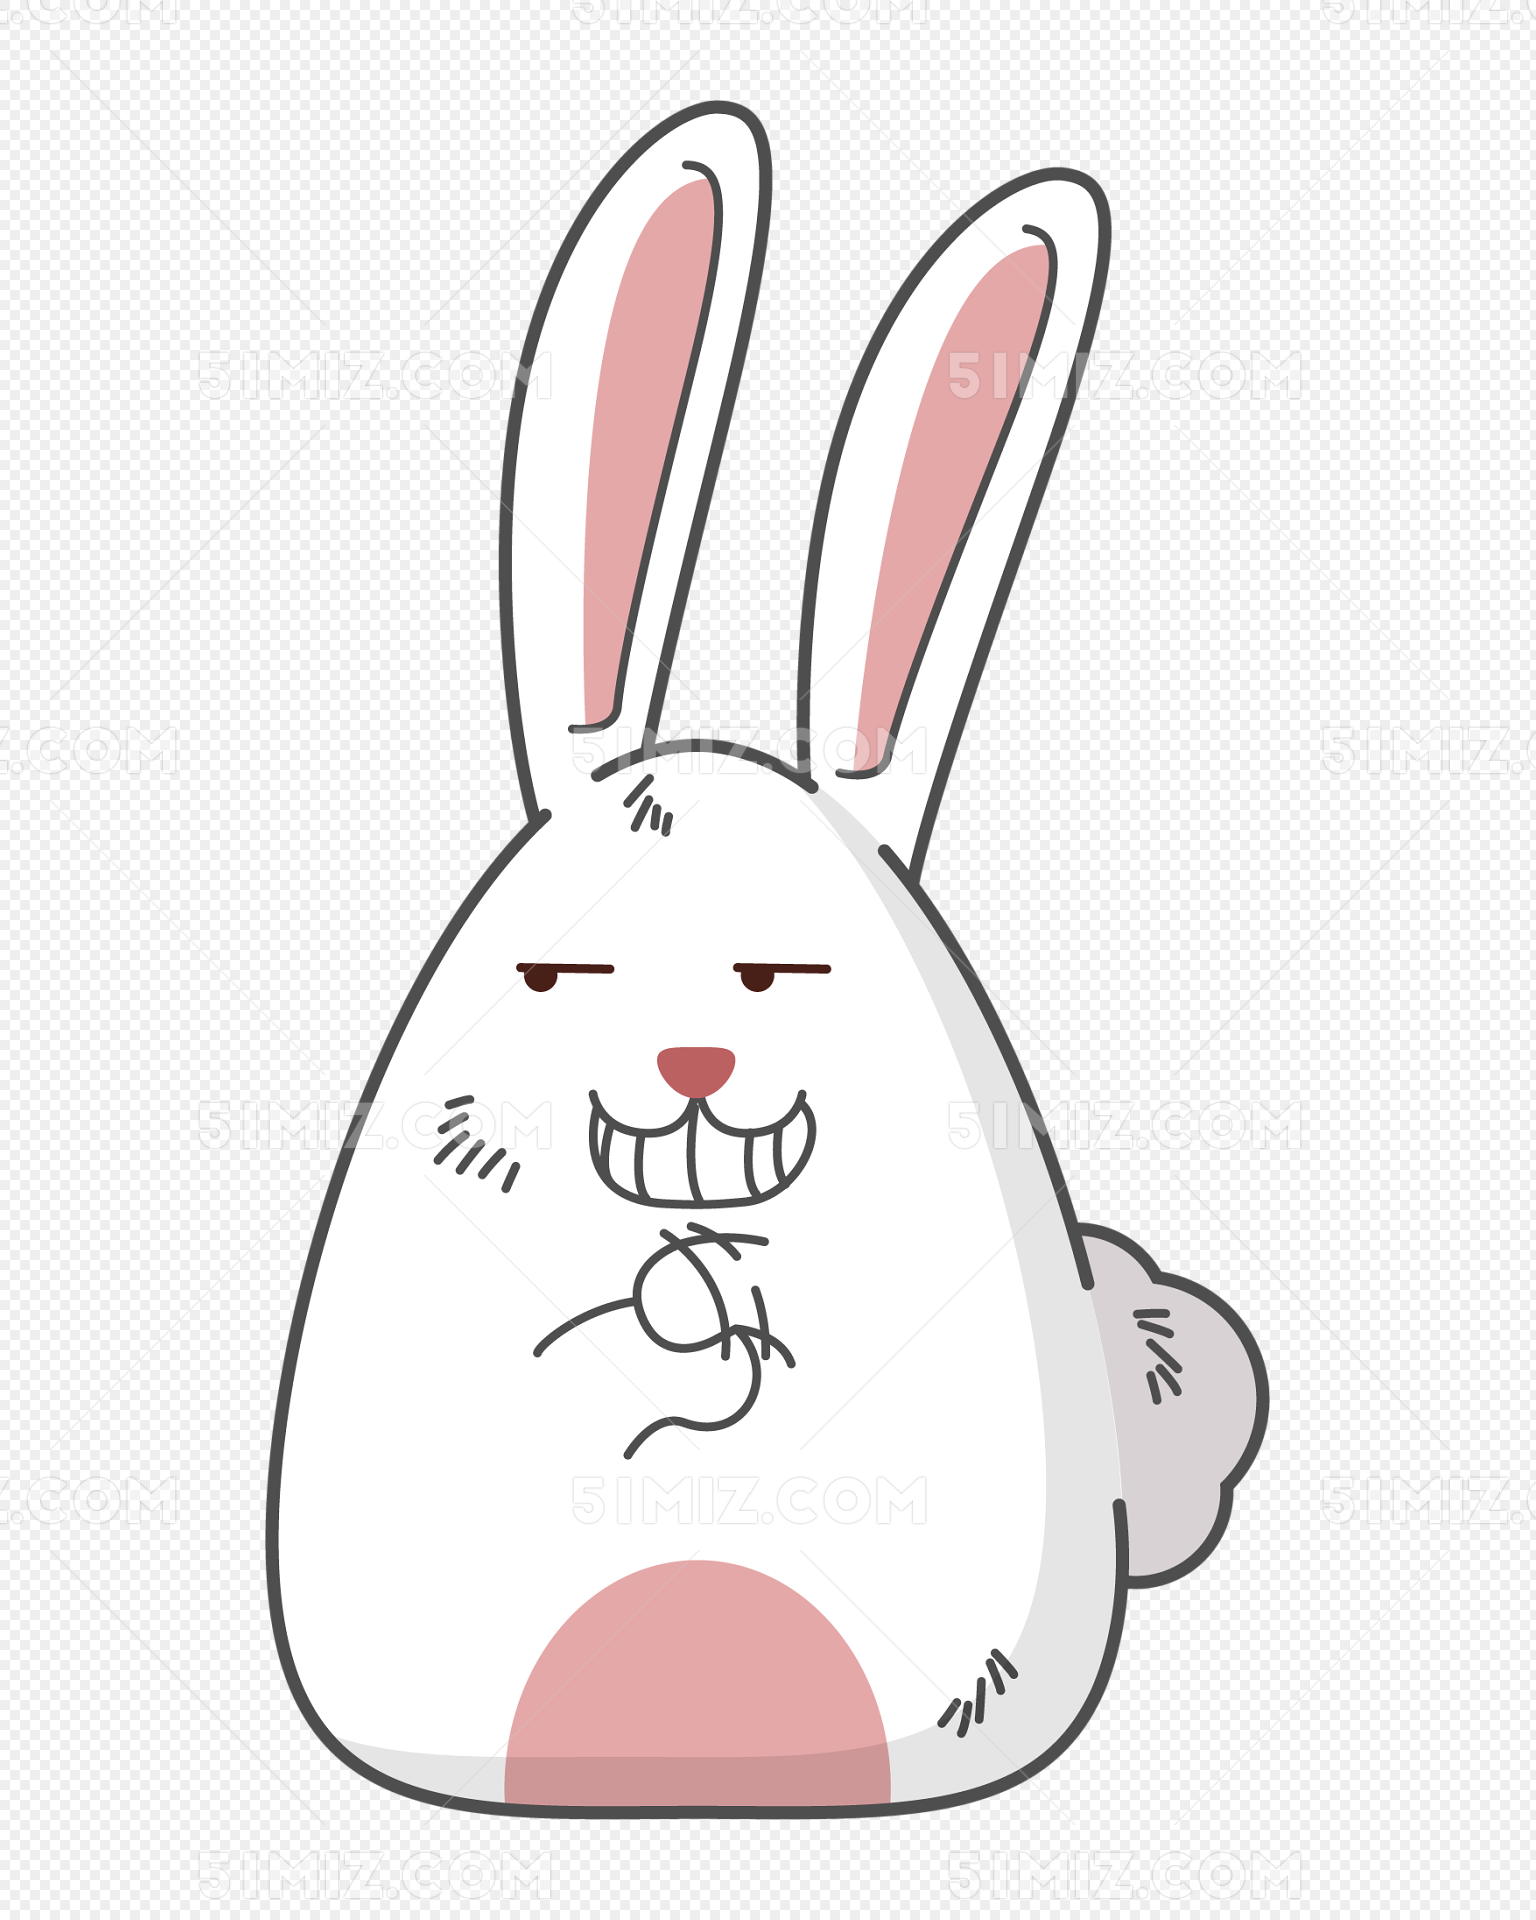 可爱的小白兔图片_动漫人物_动漫卡通_图行天下图库